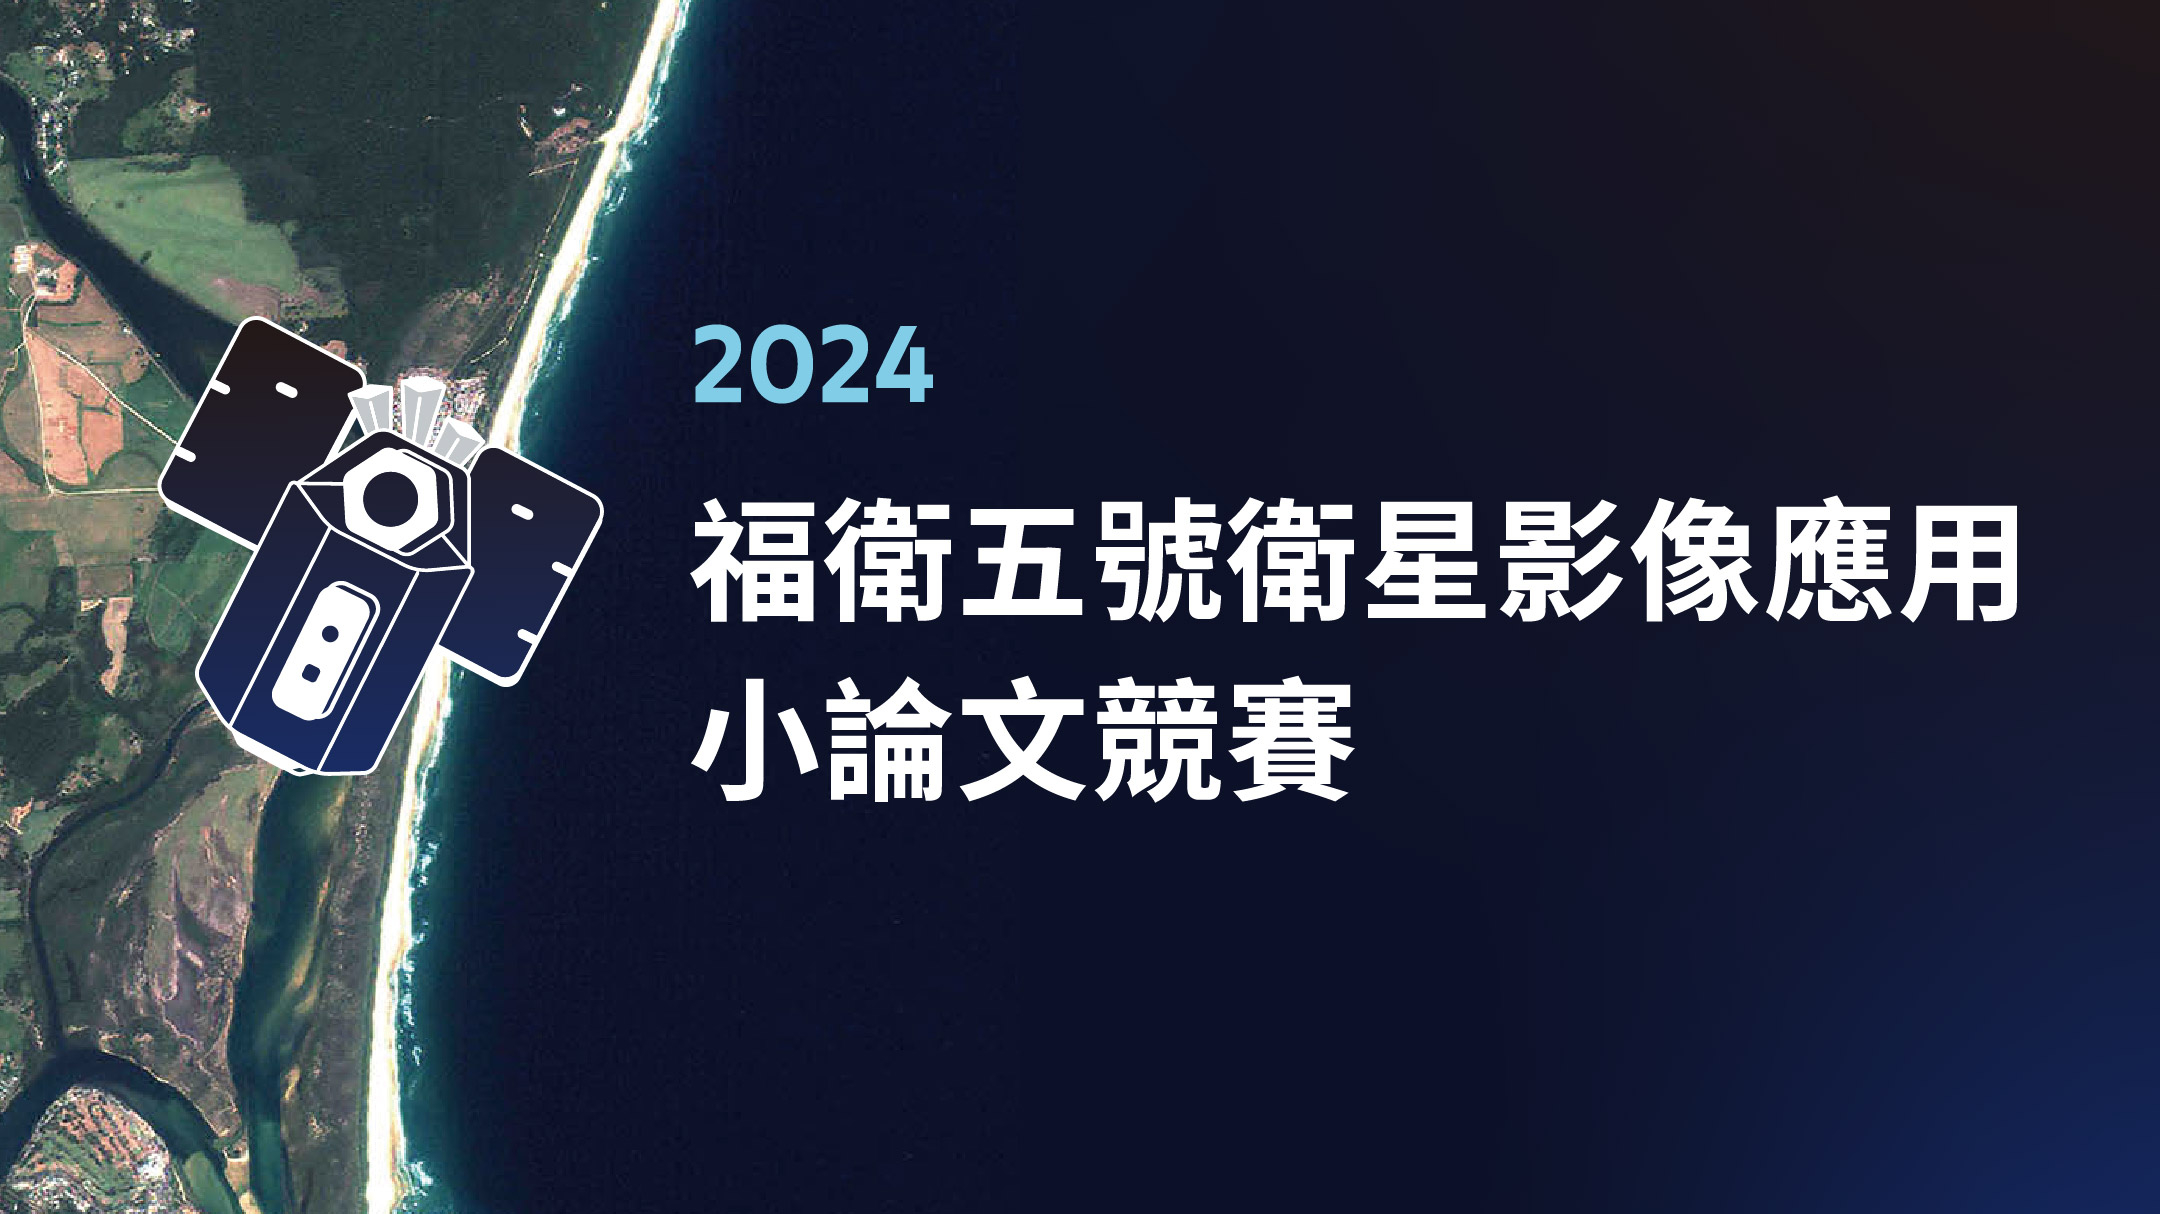 2024 福衛五號衛星影像應用小論文競賽